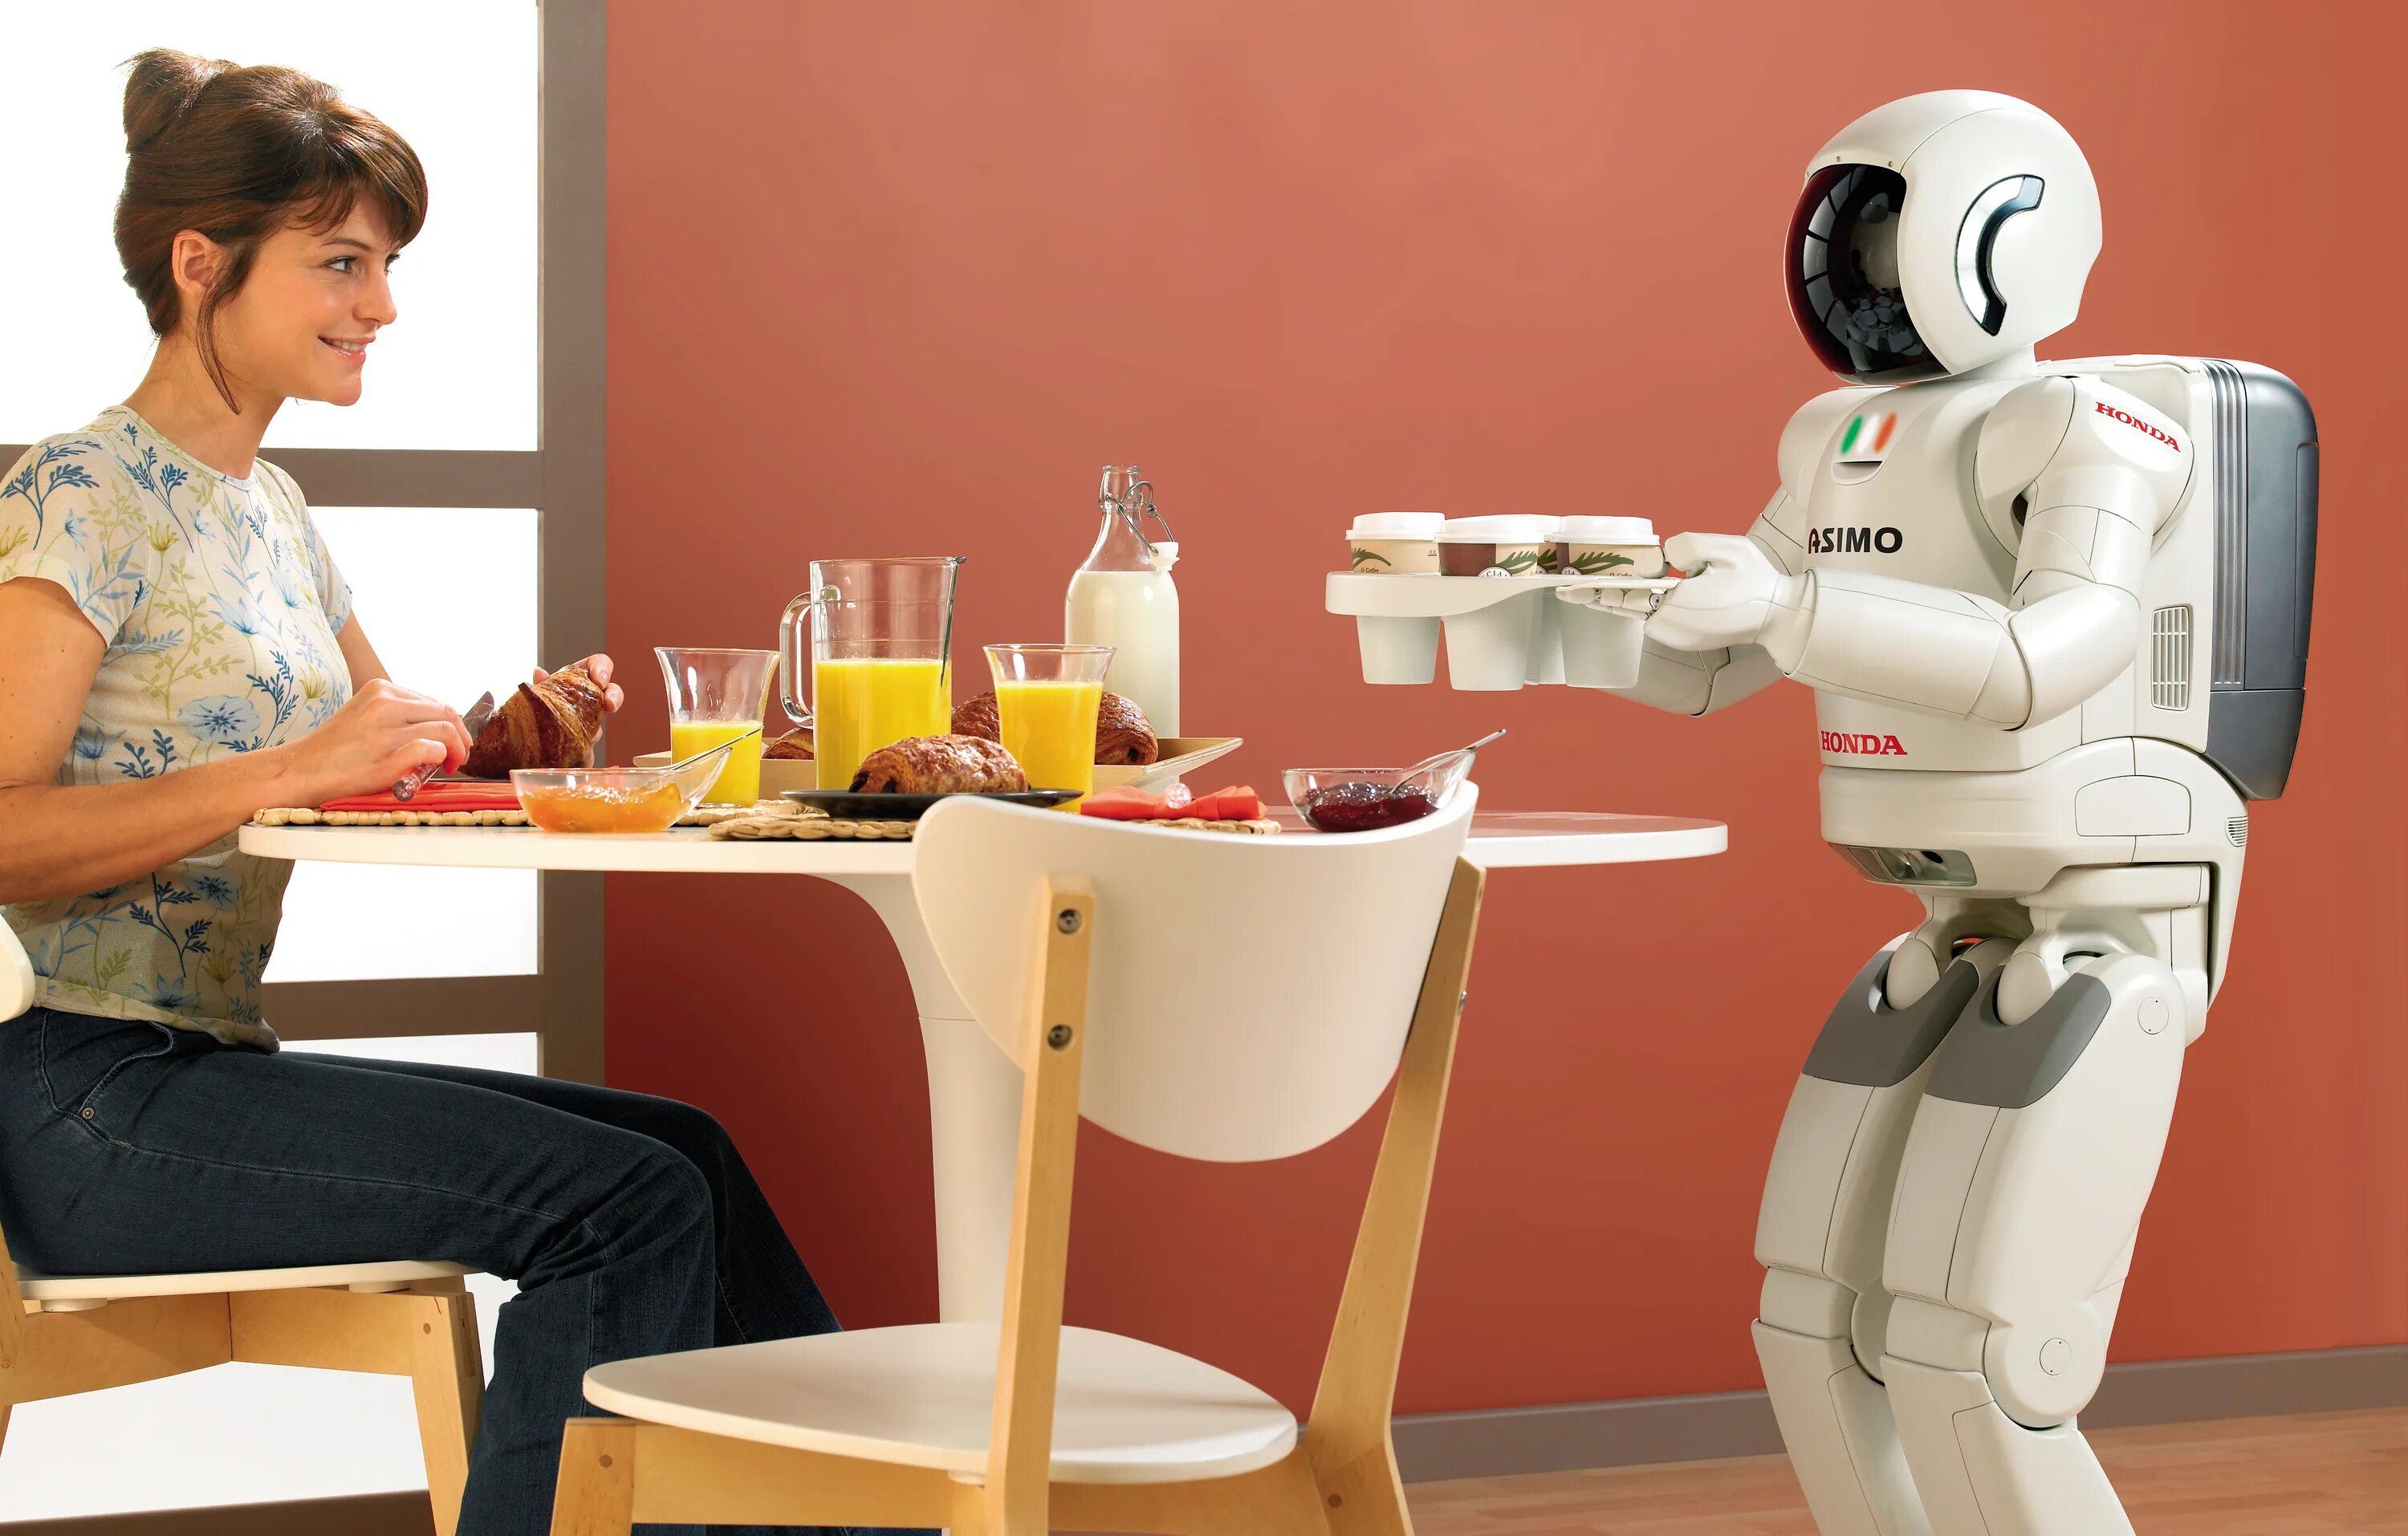 Роботы мечты и реальность. Роботы-помощники. Бытовые роботы. Роботы помощники в быту. Роботы в повседневной жизни.